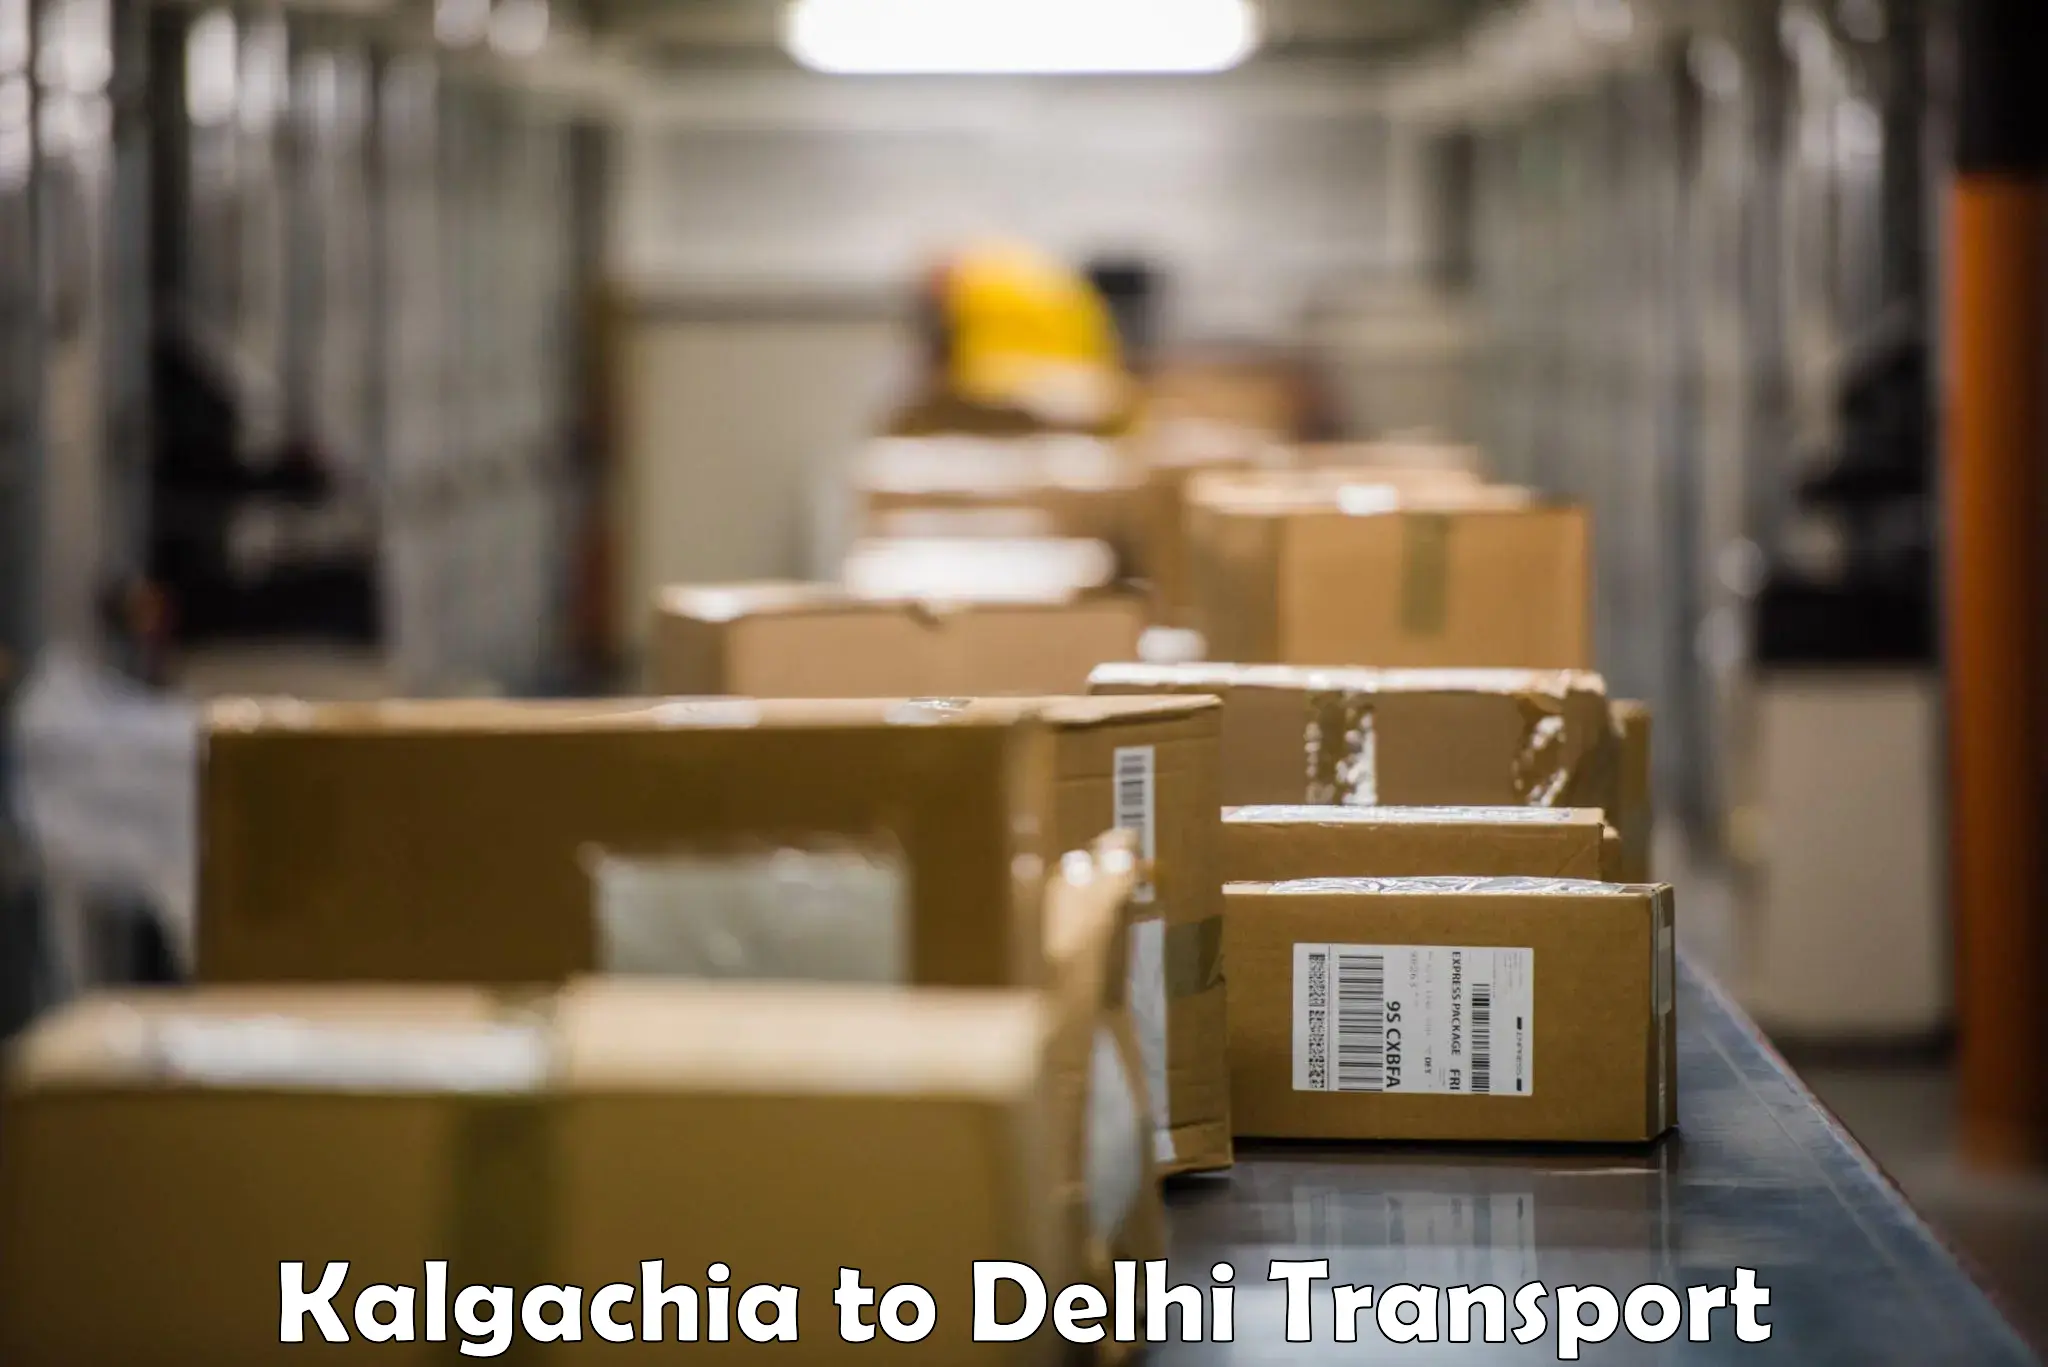 Daily parcel service transport Kalgachia to IIT Delhi